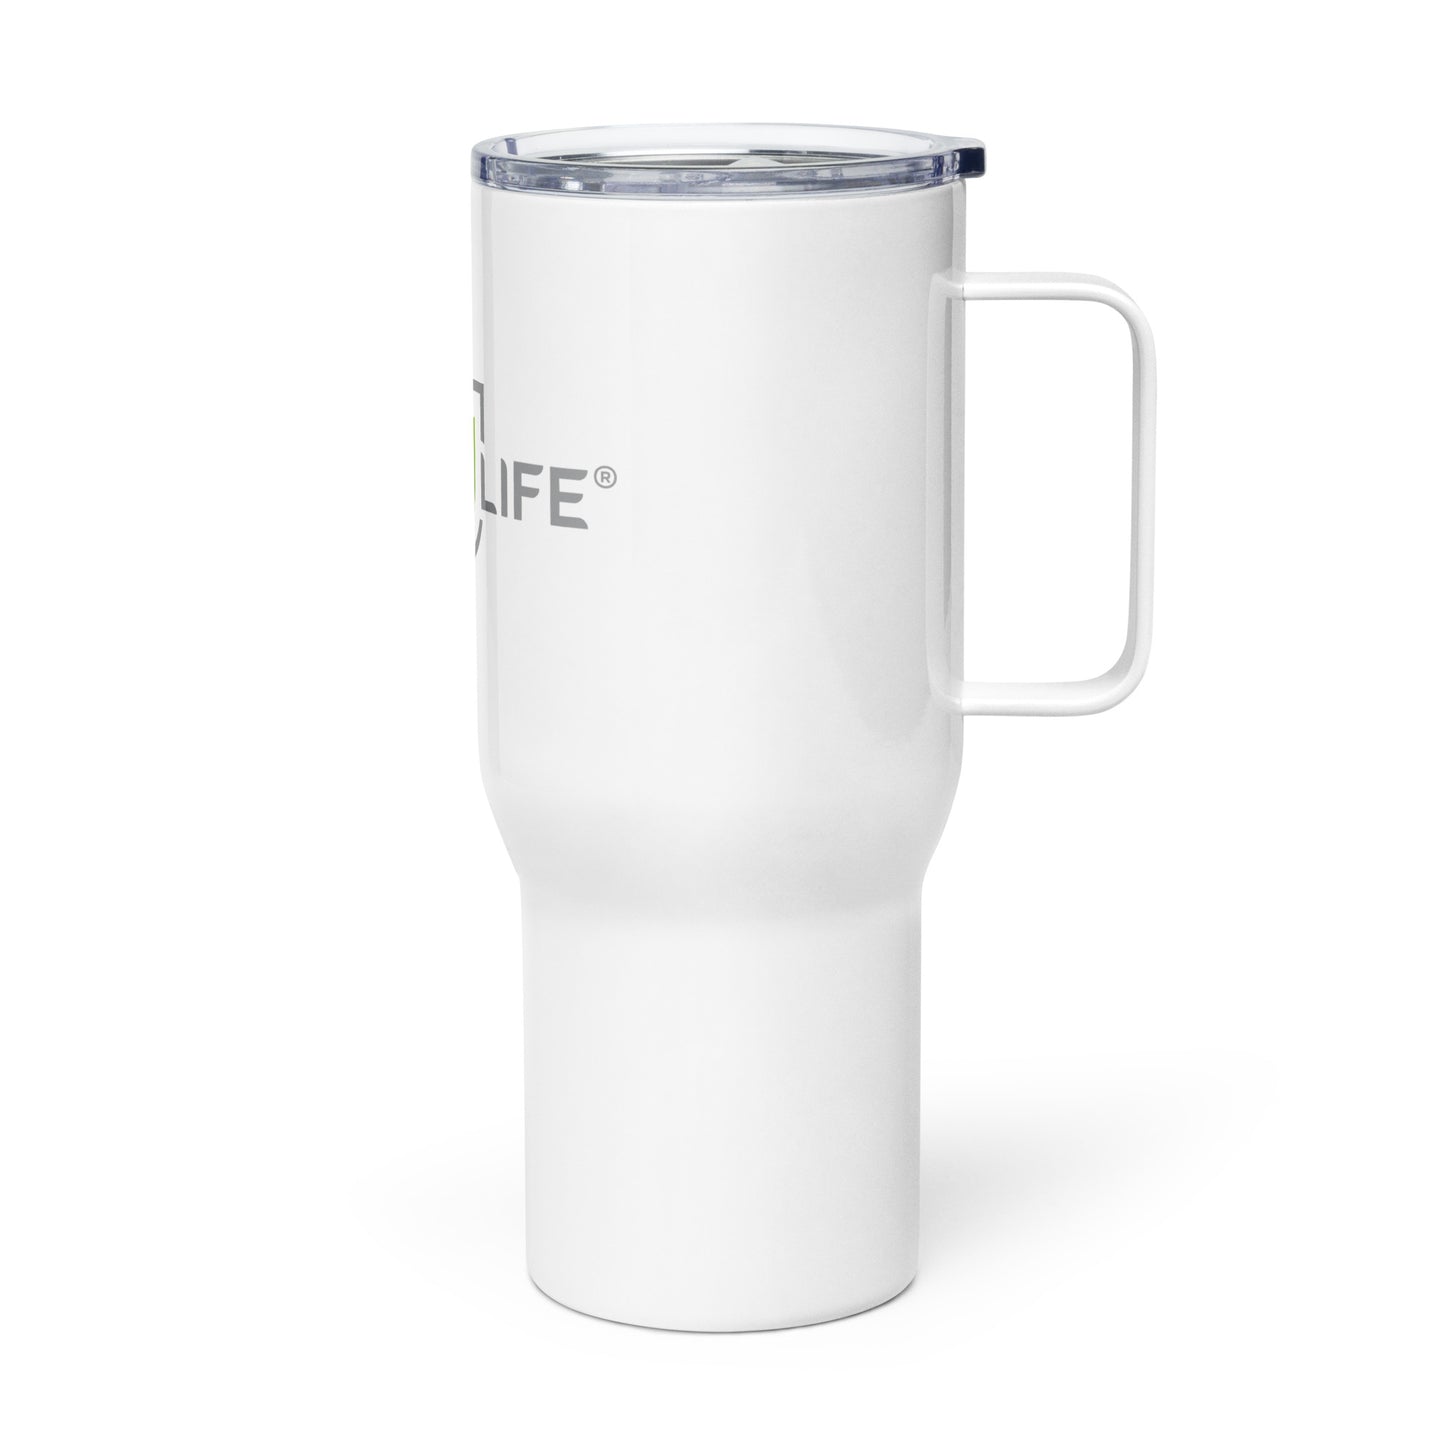 New U Life Travel mug with a handle